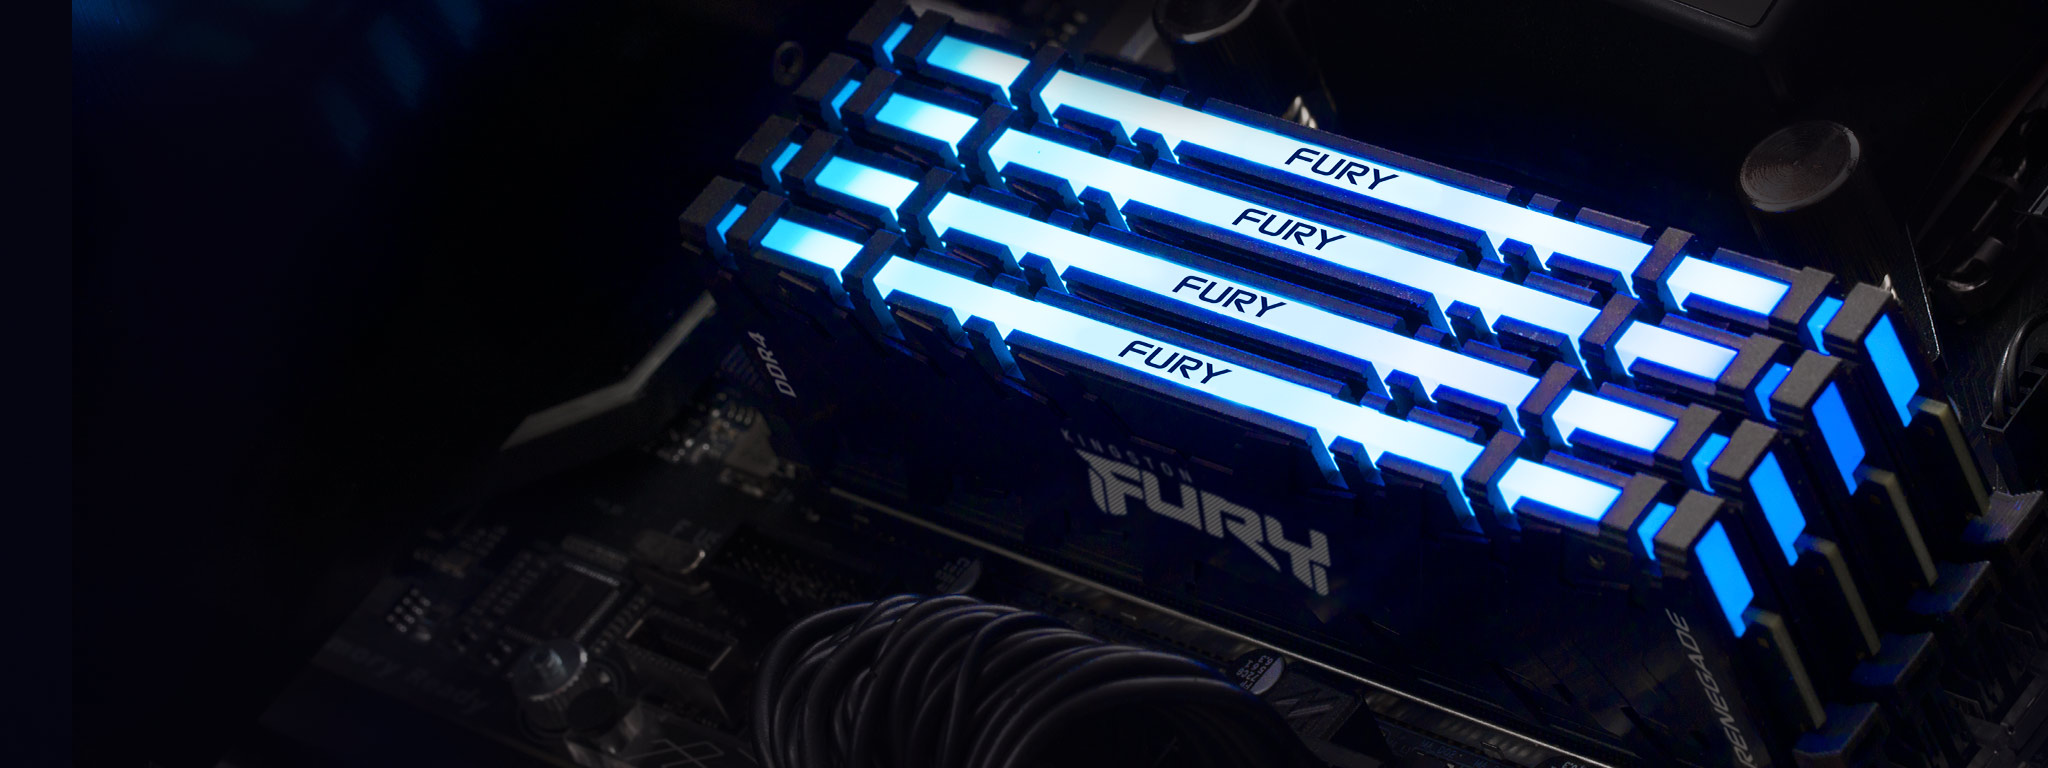 4 つの Kingston FURY Renegade DDR4 RGB メモリモジュールが青色に光り、マザーボードのメモリスロットに取り付けられている